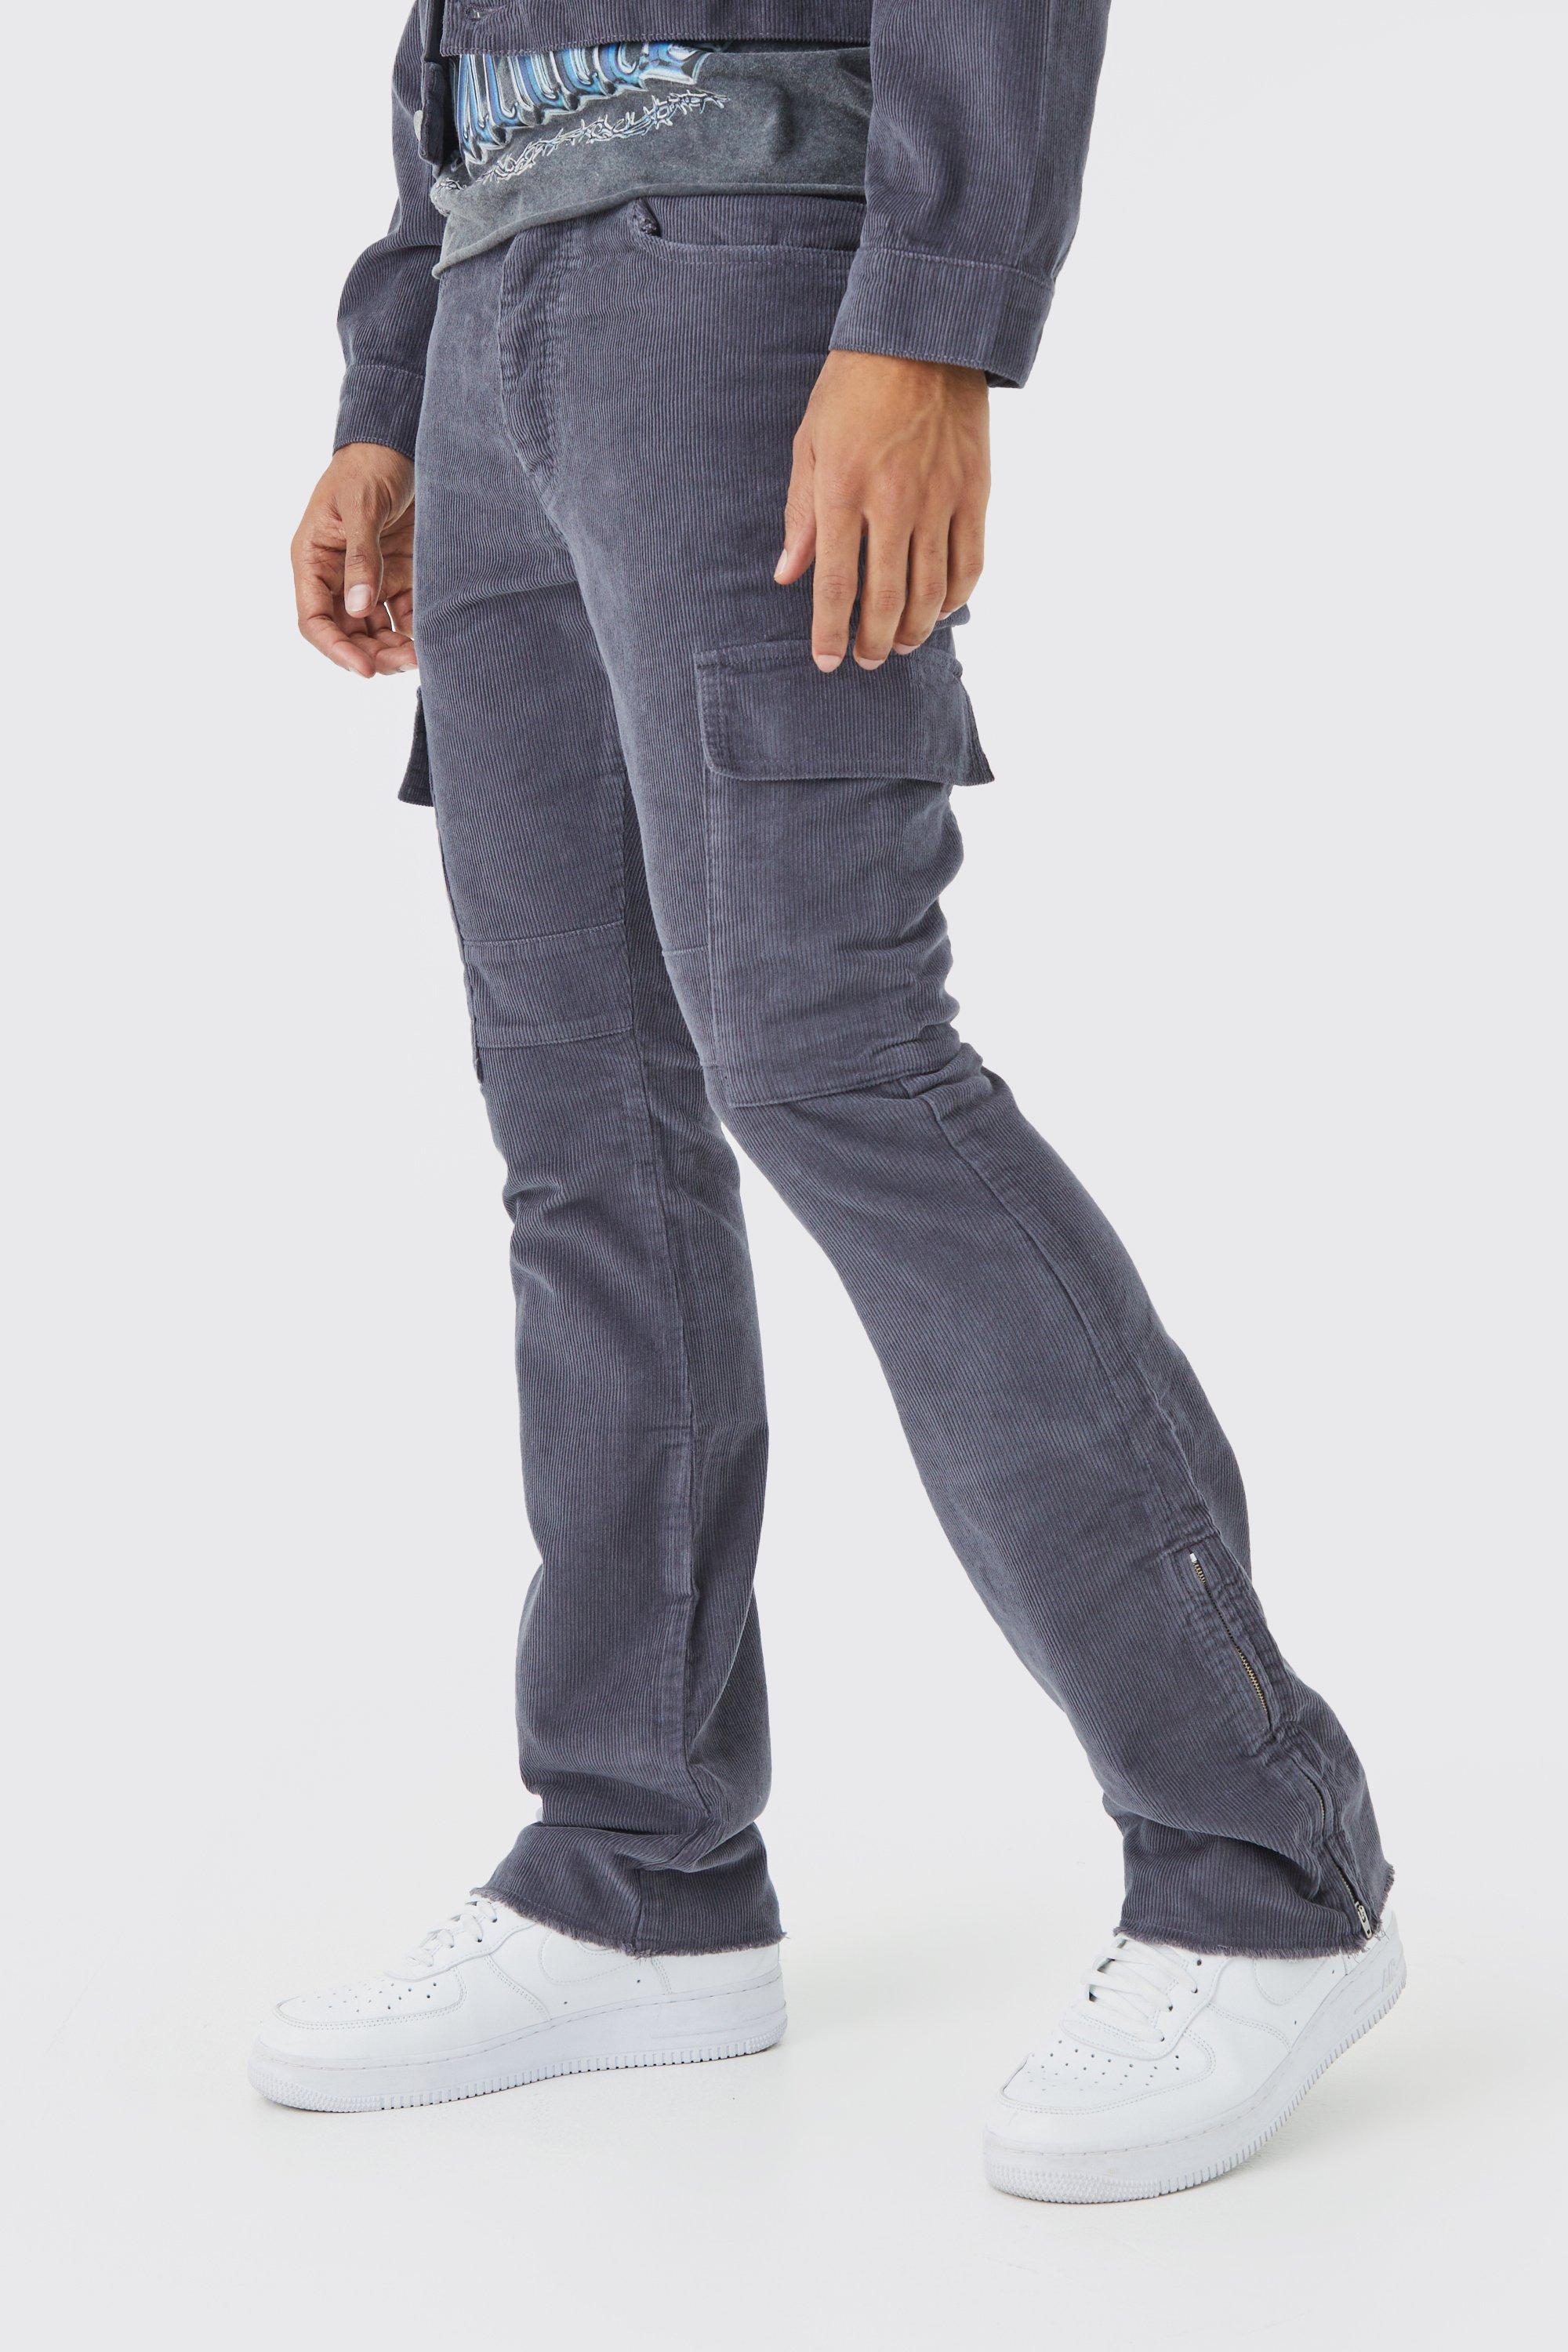 pantalon cargo zippé homme - gris - 34, gris